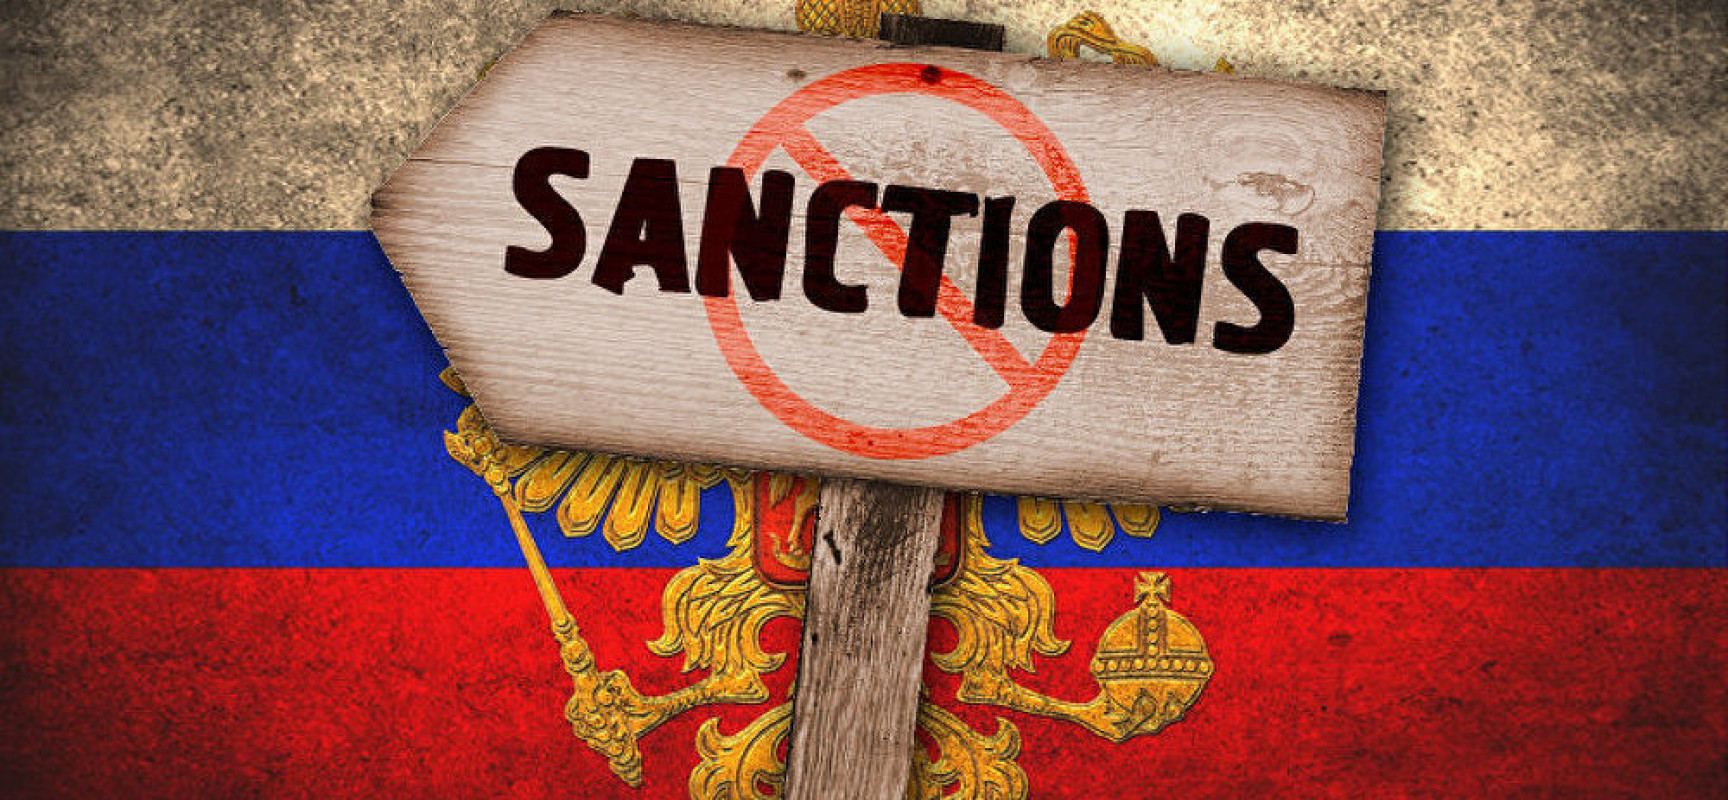 Закон про санкції – не засіб стримування, якщо не зробити його "зубастим", – конгресмен США